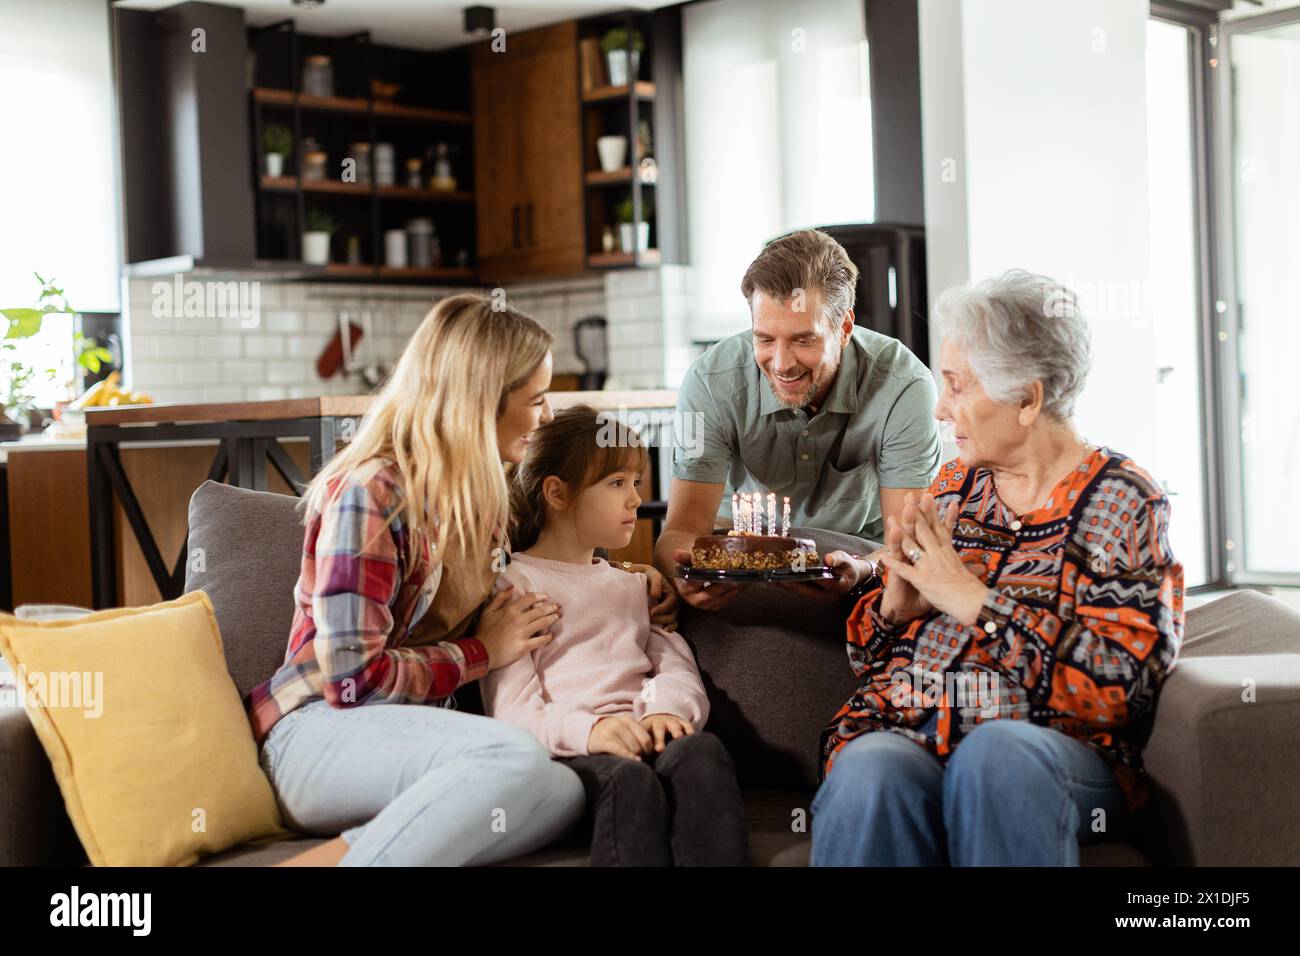 Una scena emozionante si svolge mentre una famiglia multigenerazionale si riunisce su un divano per presentare una torta di compleanno a una nonna adorata, creando ricordi indimenticabili Foto Stock